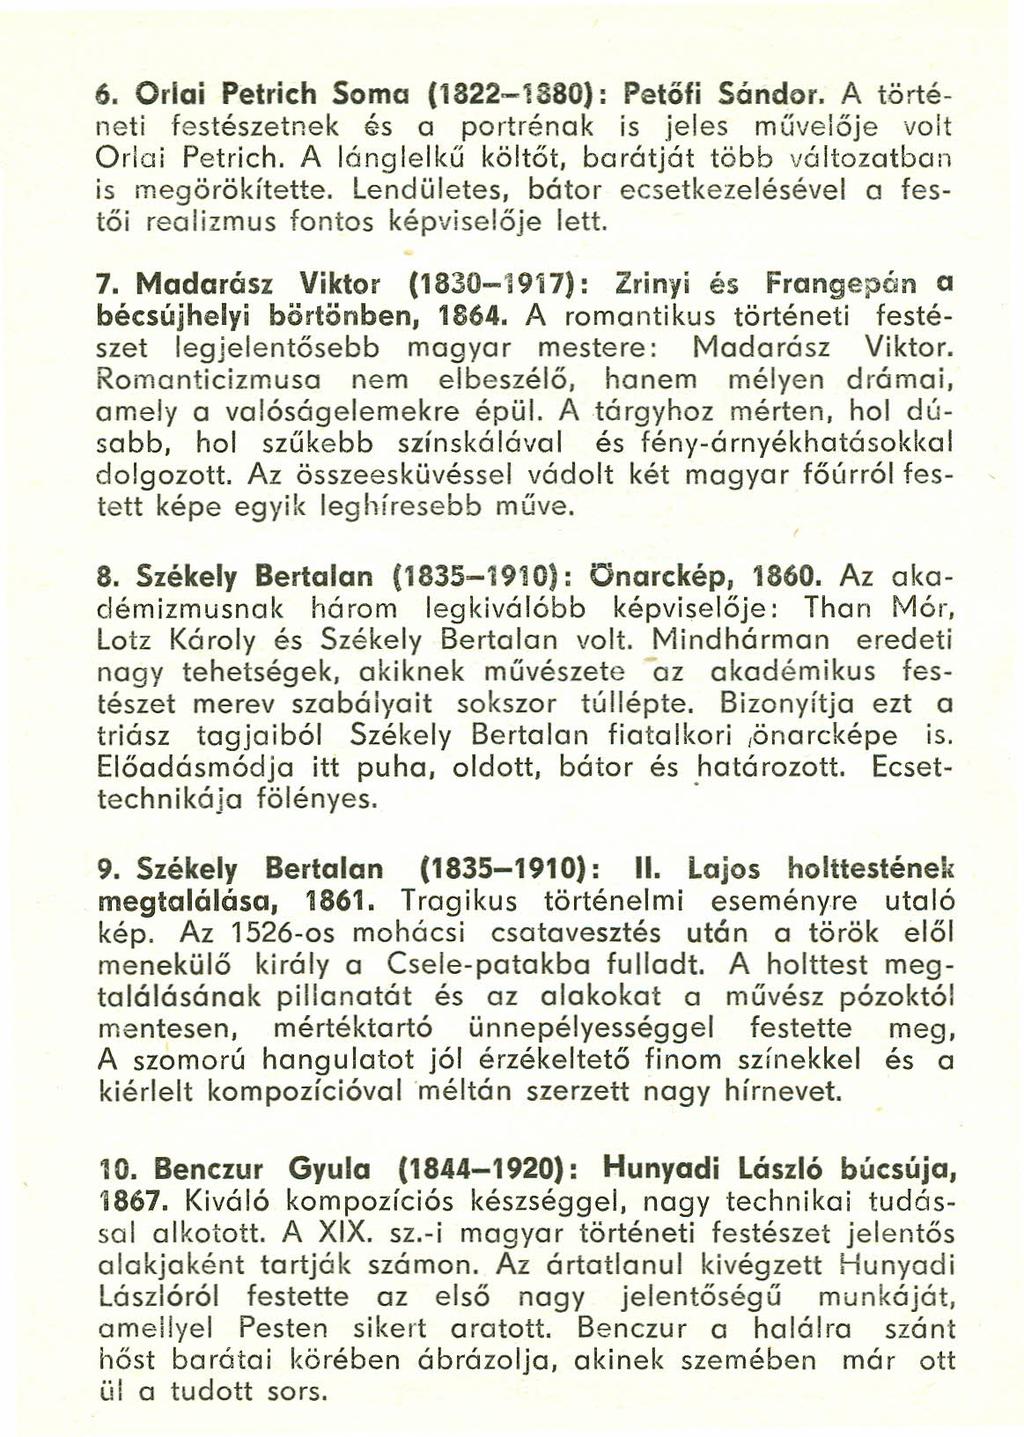 6. Orlai Petrich Soma (1822-1880): Petőfi Sándor. A történeti festészetnek és a portrénak is jeles művelője volt Orlai Petrich. A lánglelkű költőt, barátját több változatban is megörökítette.